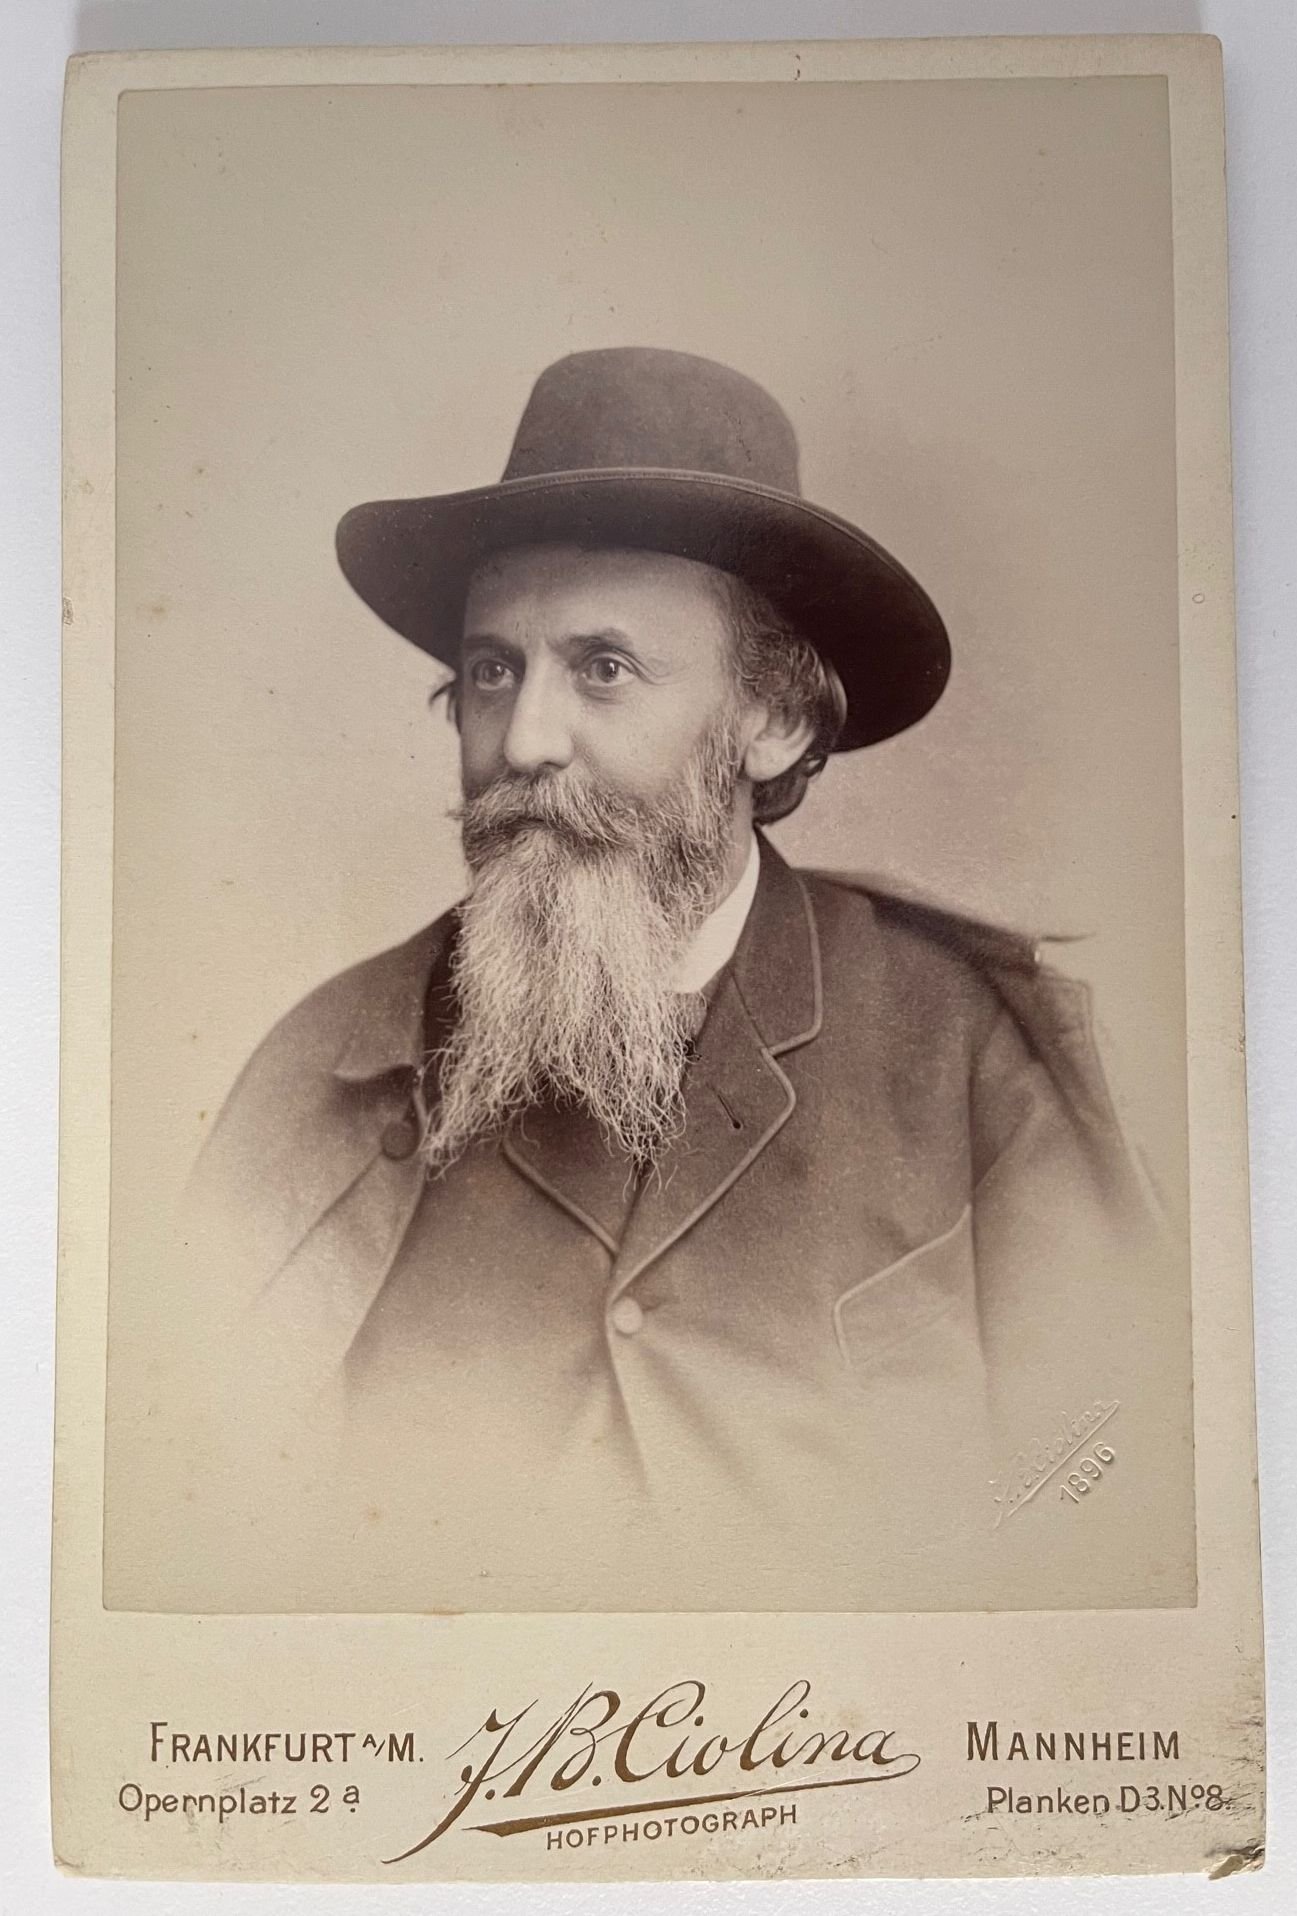 Fotografie, J. B. Ciolina, Dr. Peter Dettweiler, 1896 (Taunus-Rhein-Main - Regionalgeschichtliche Sammlung Dr. Stefan Naas CC BY-NC-SA)